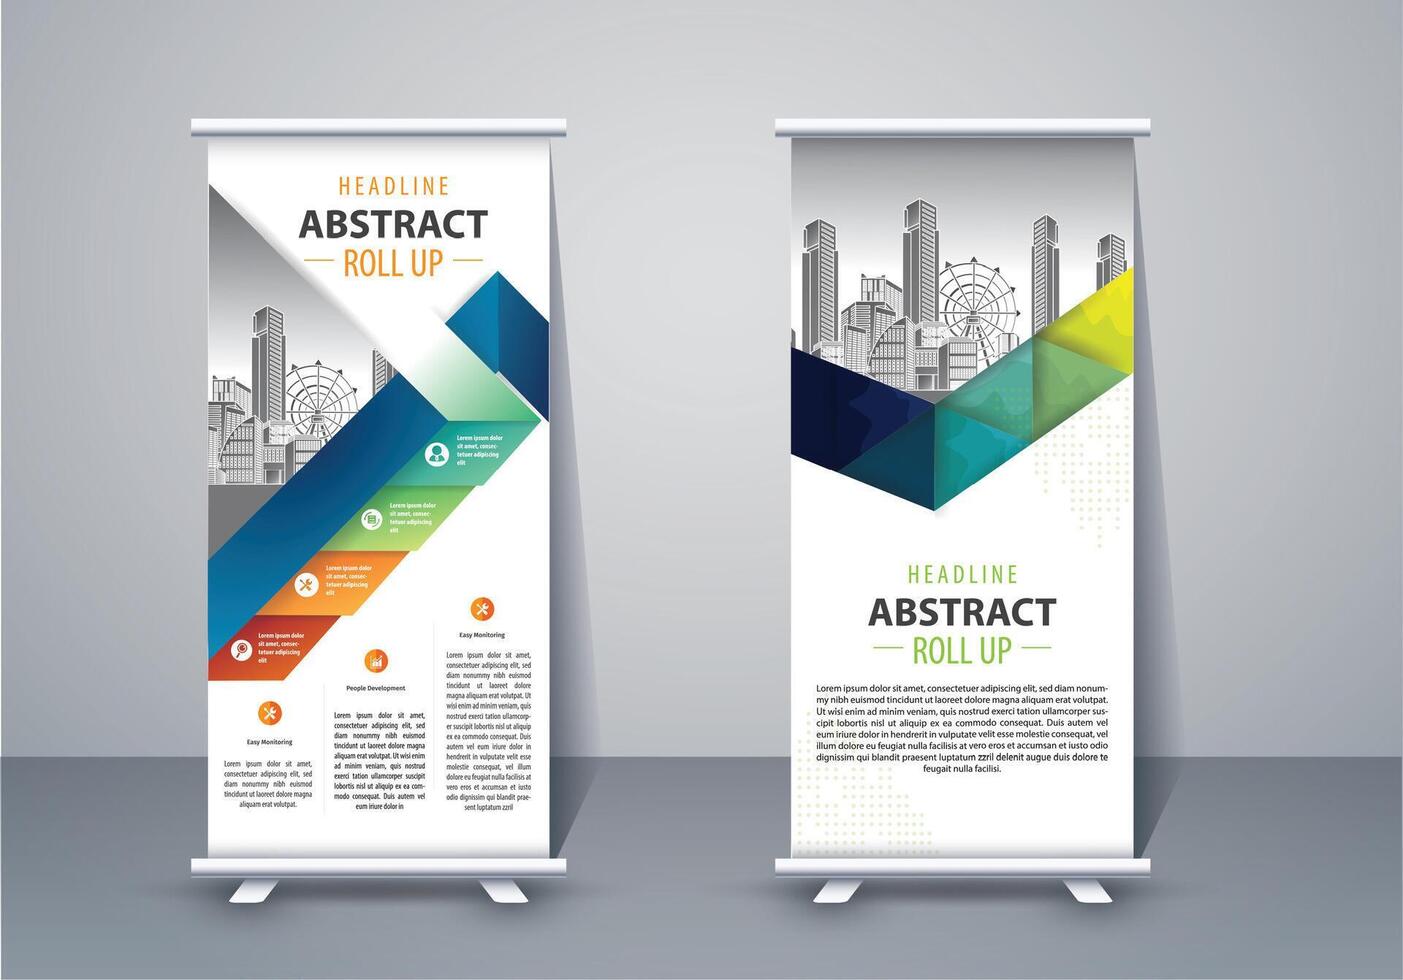 vertikal baner design skylt reklam broschyr flygblad mall x-banderoll och gata företag flagga av bekvämlighet, layout bakgrund vektor